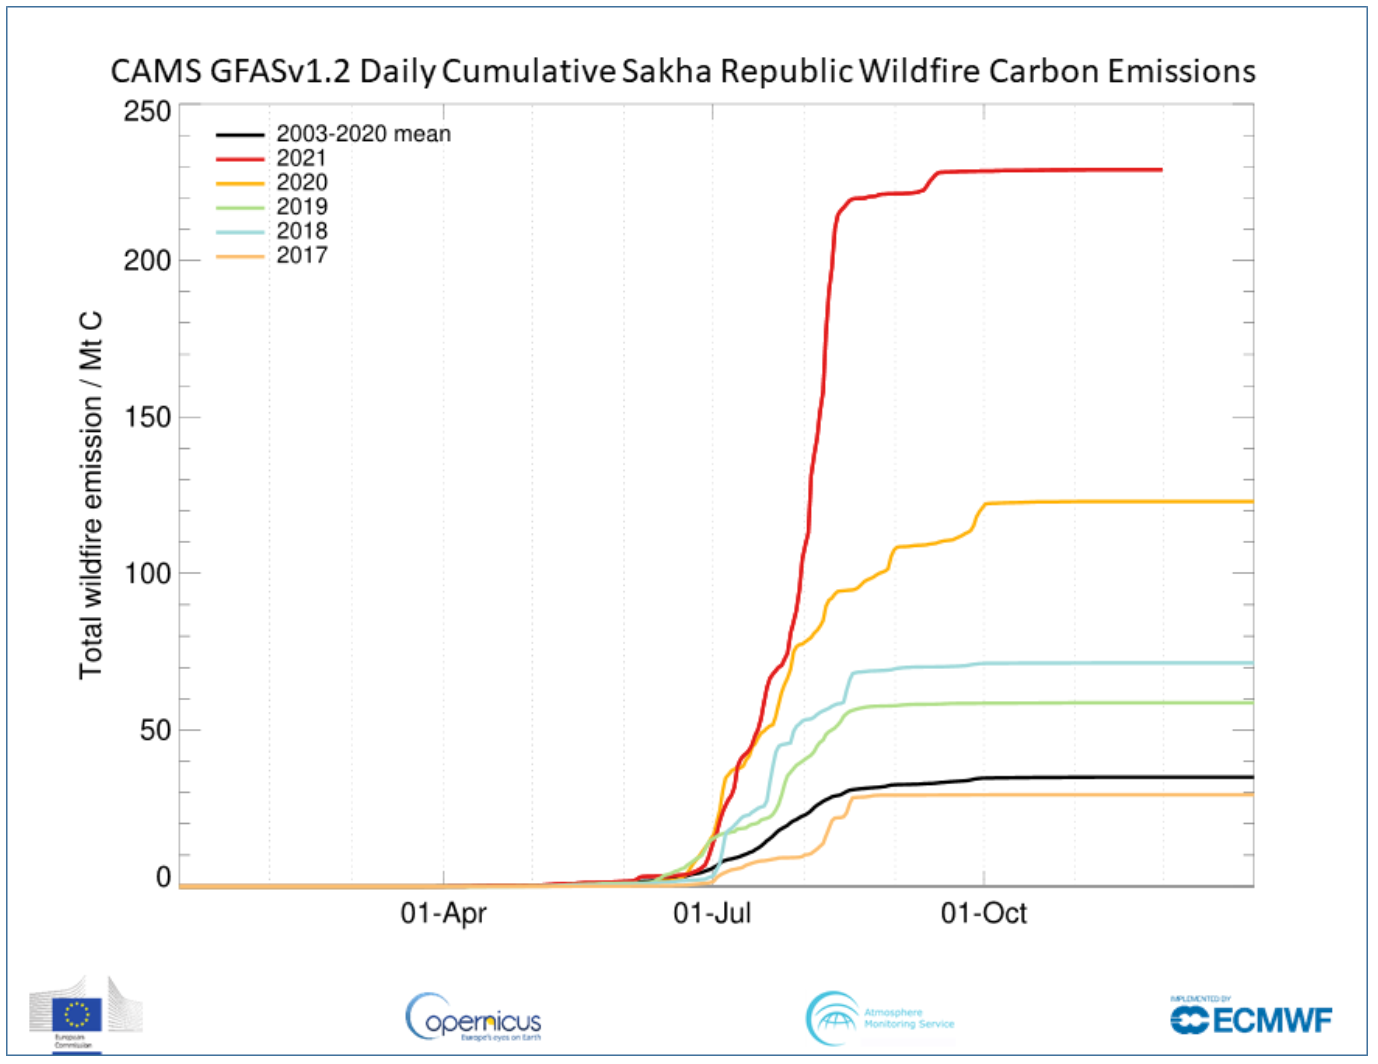 Emisiones diarias de carbono acumuladas por los incendios forestales en la República de Sajá, al noreste de Siberia